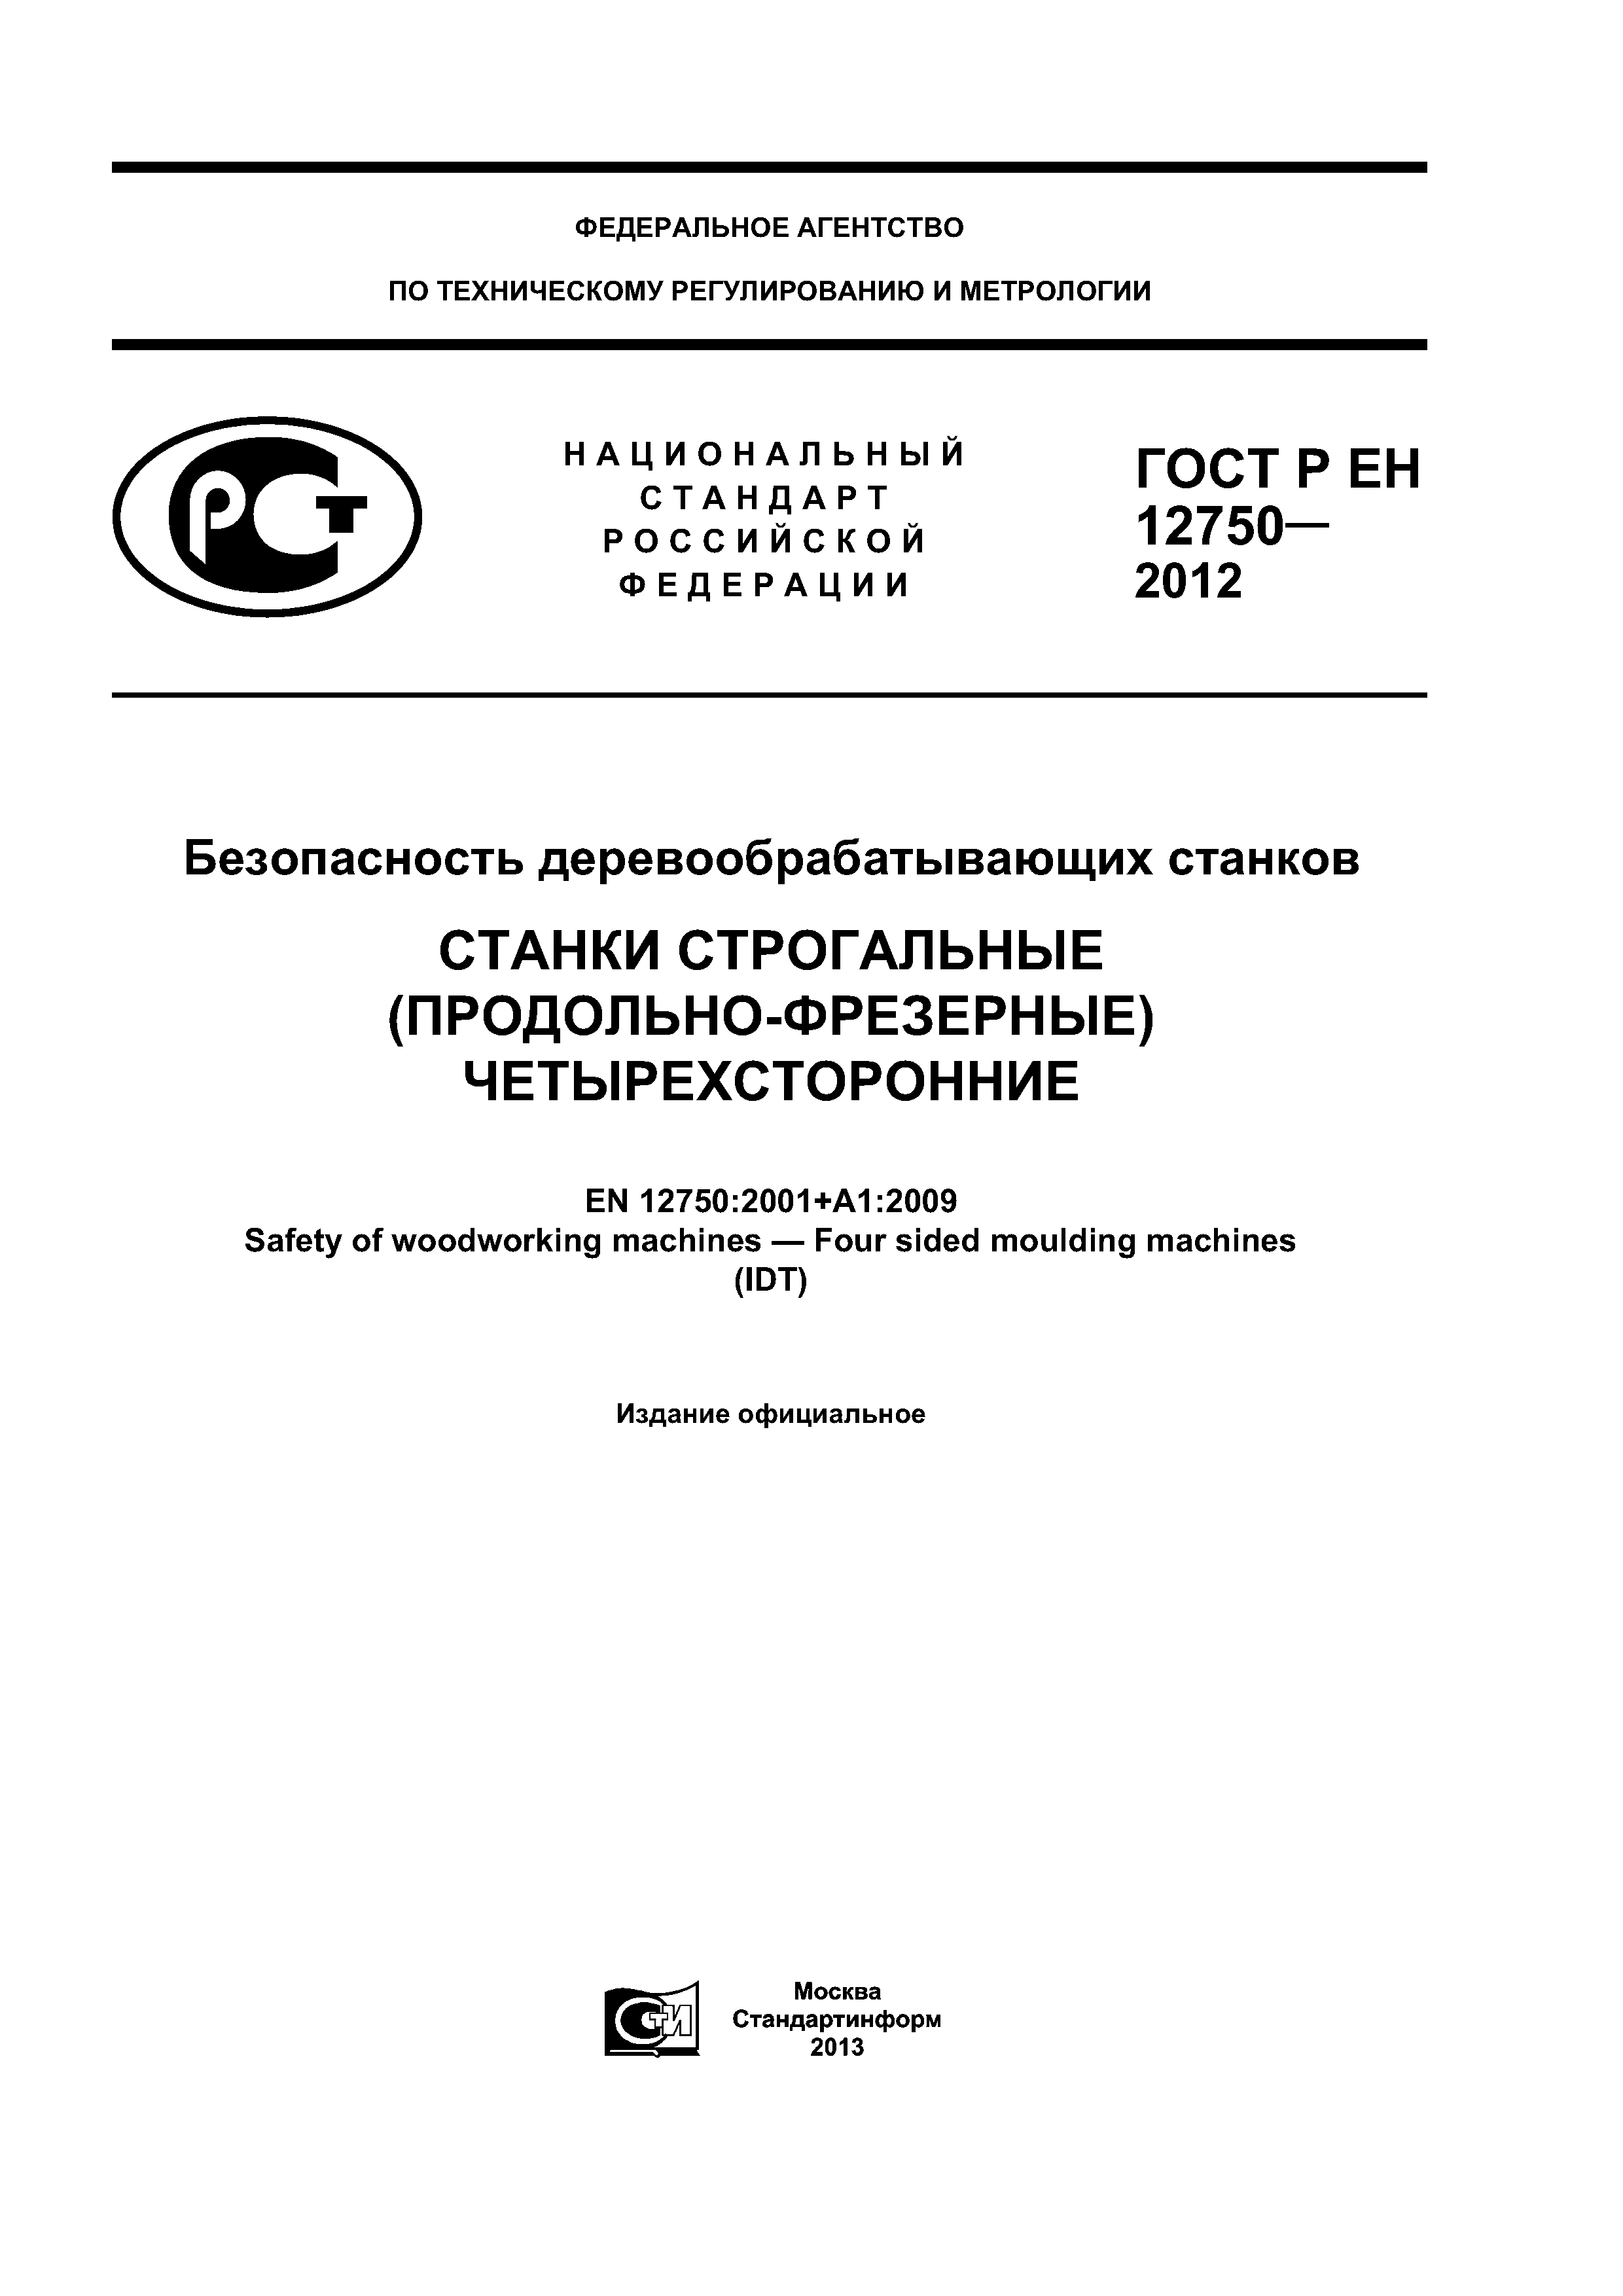 ГОСТ Р ЕН 12750-2012